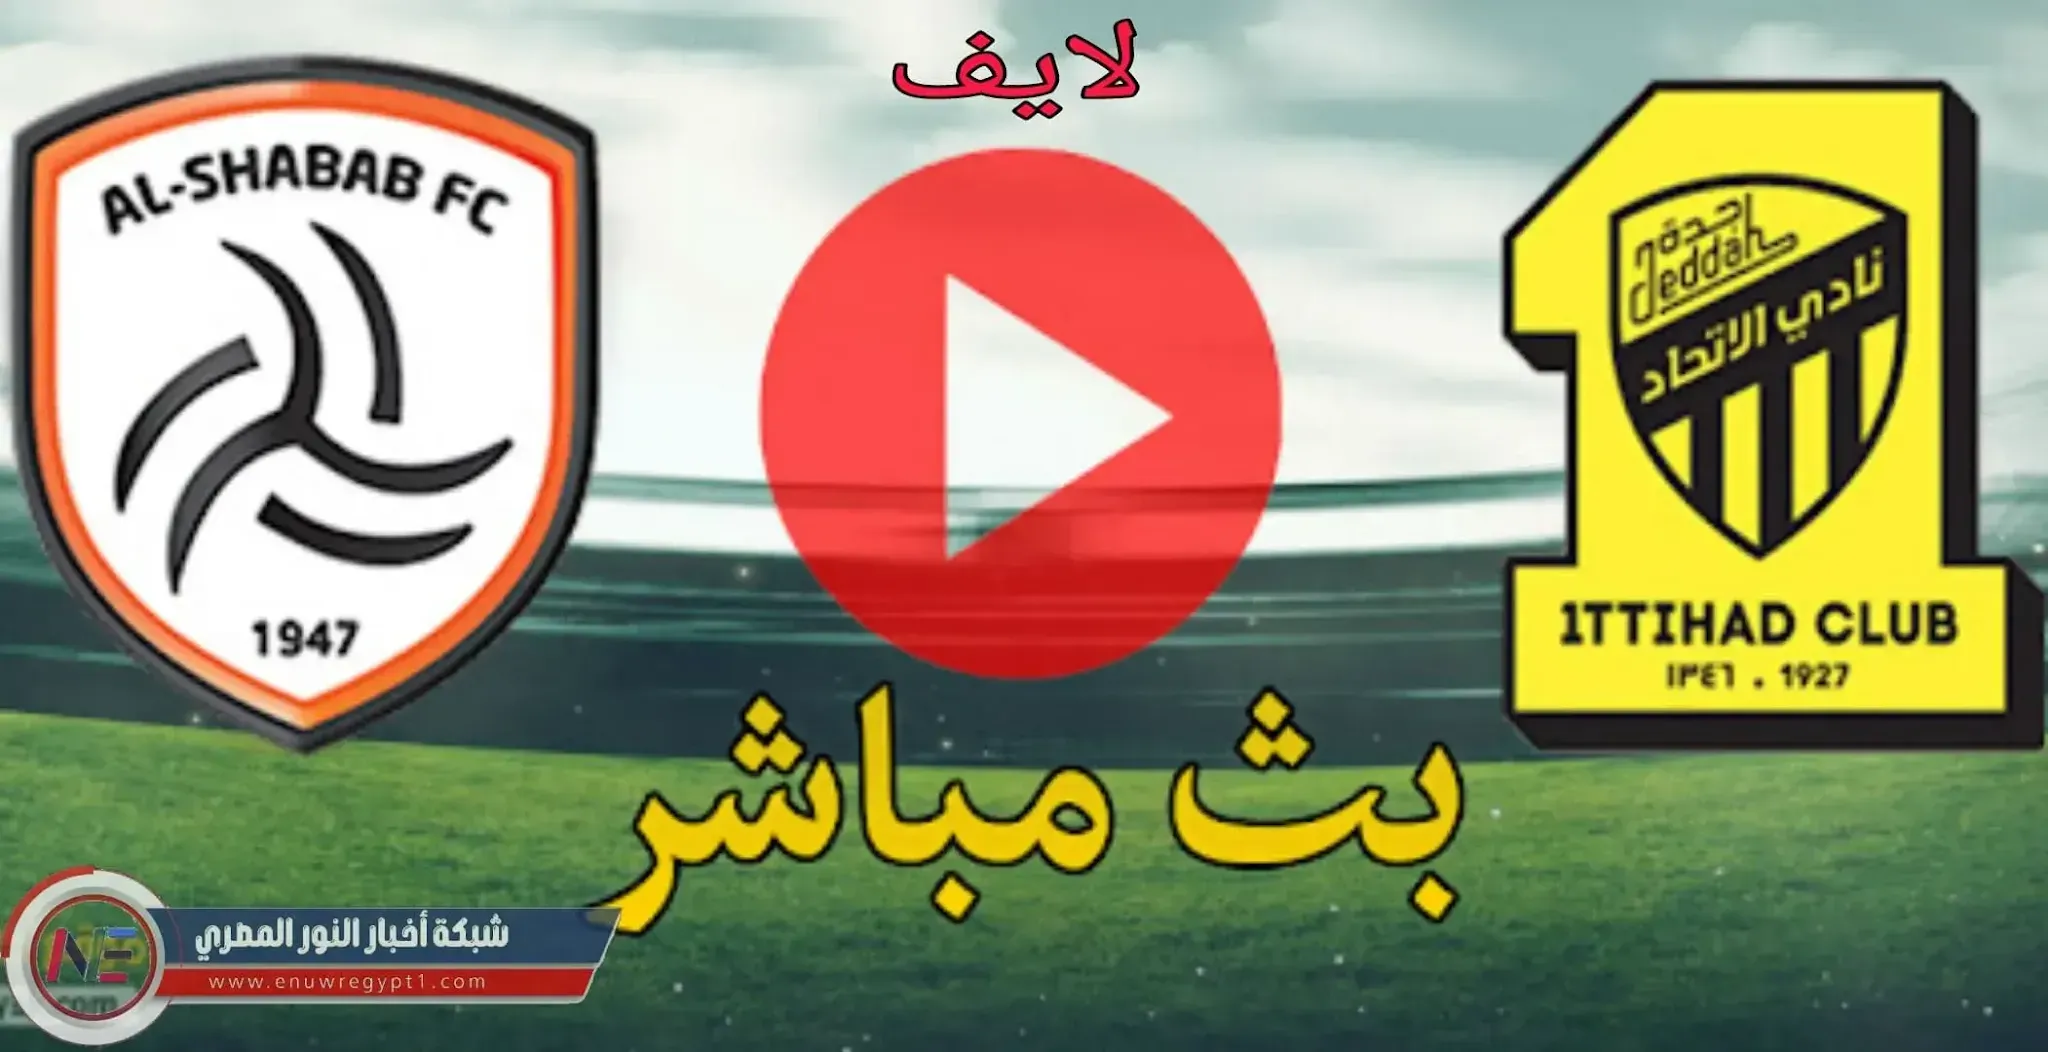 الان بث مباشر يلا شوت || قناة SSc HD1 مشاهدة مباراة الاتحاد و الشباب بث مباشر اليوم 22-10-2021 في الدورى السعودي بجودة عالية